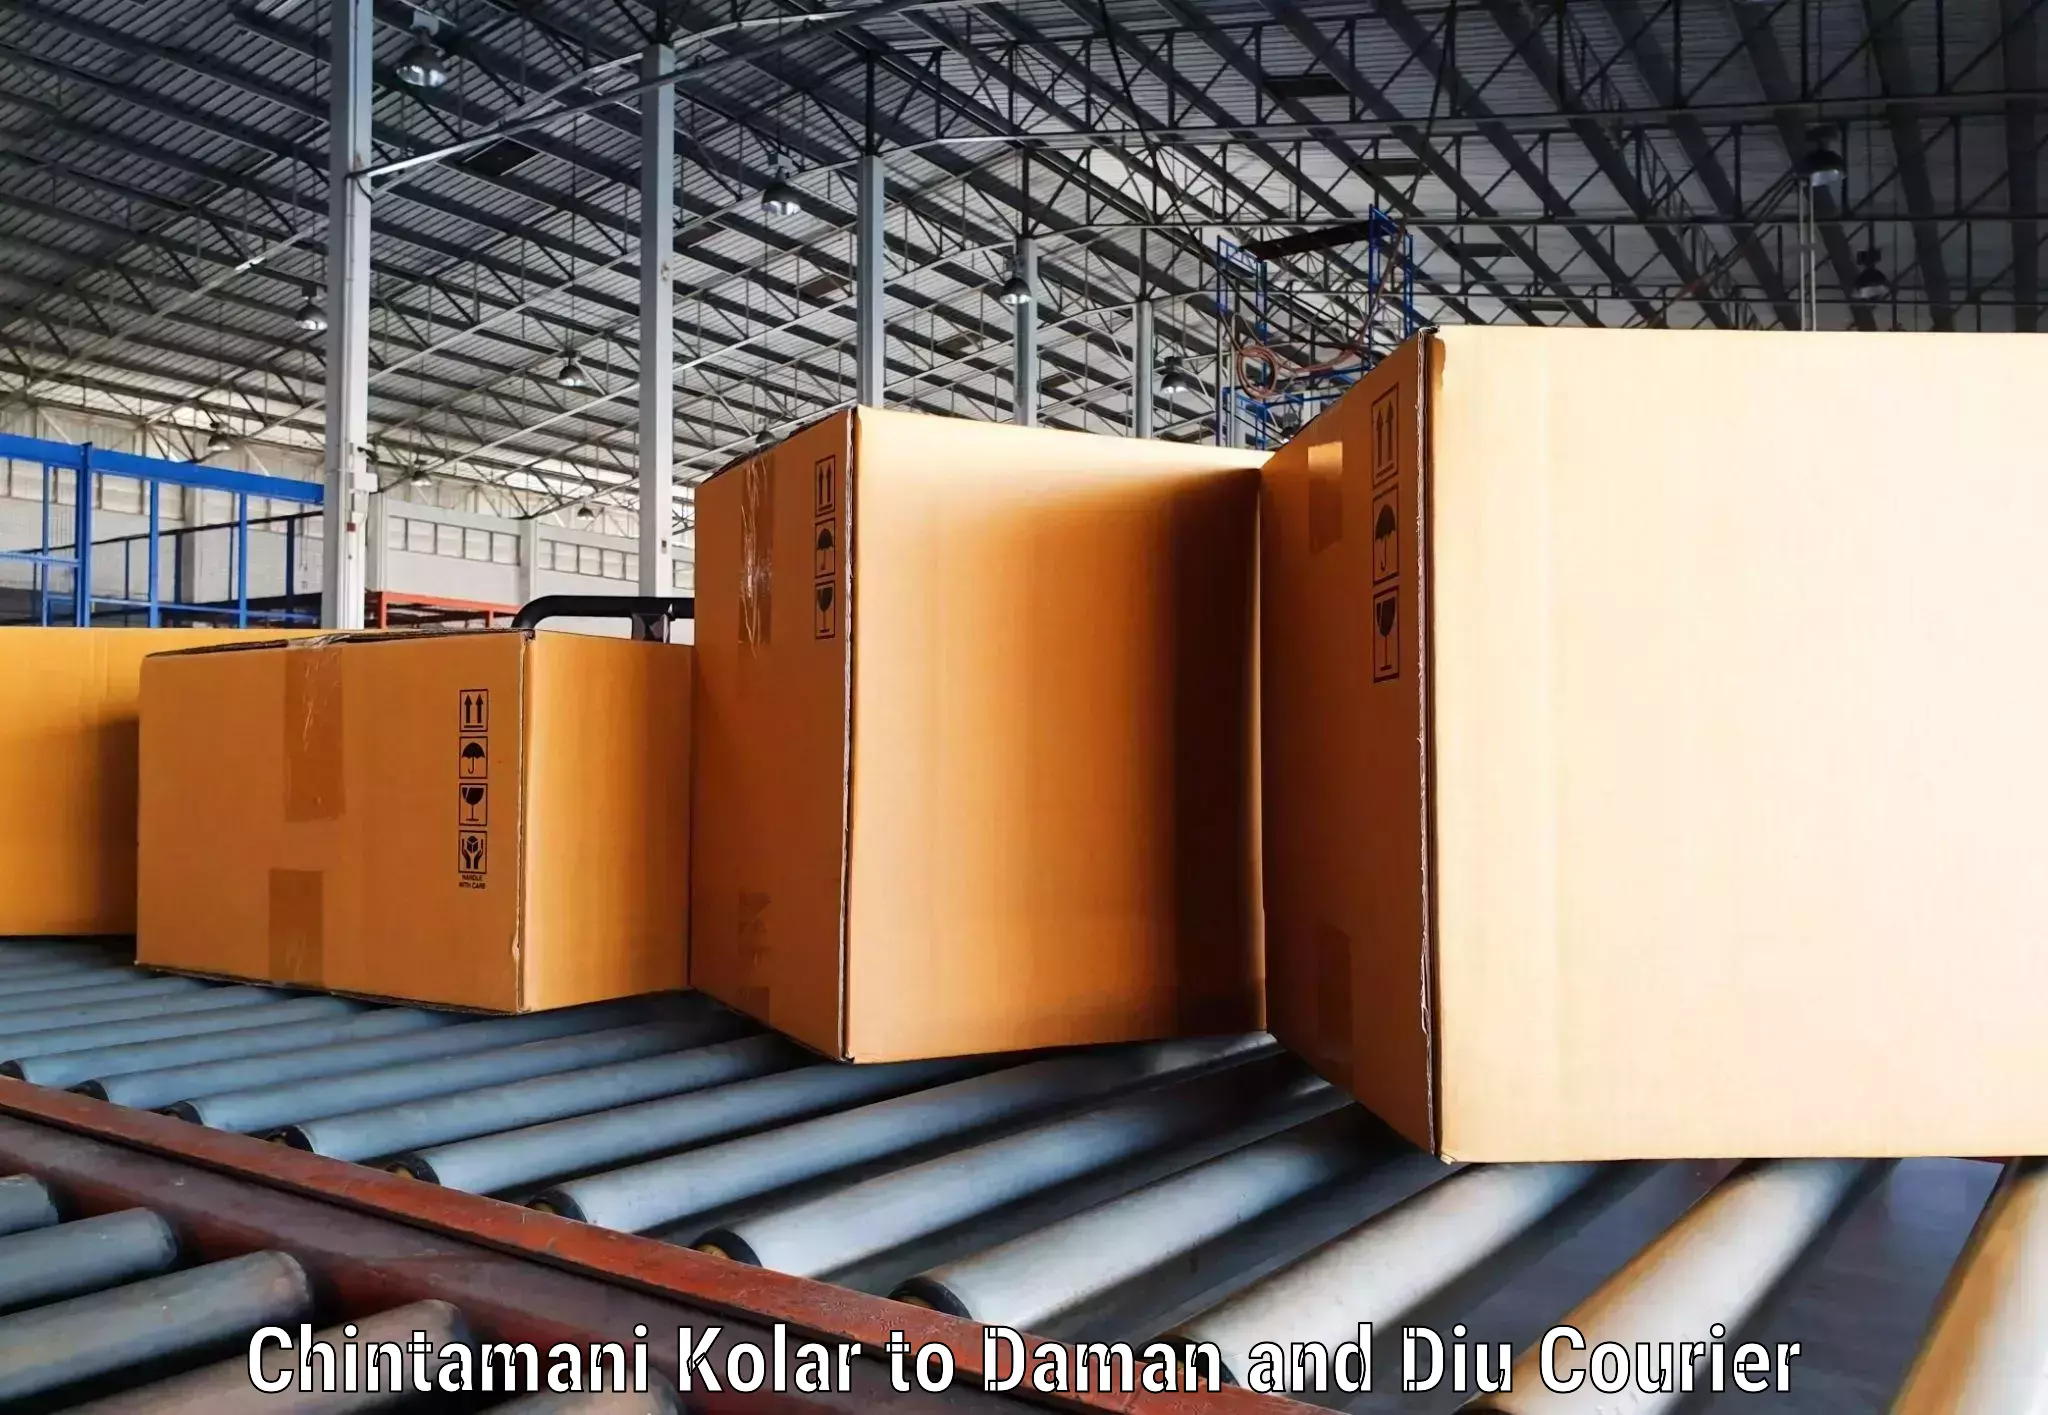 Global shipping networks Chintamani Kolar to Daman